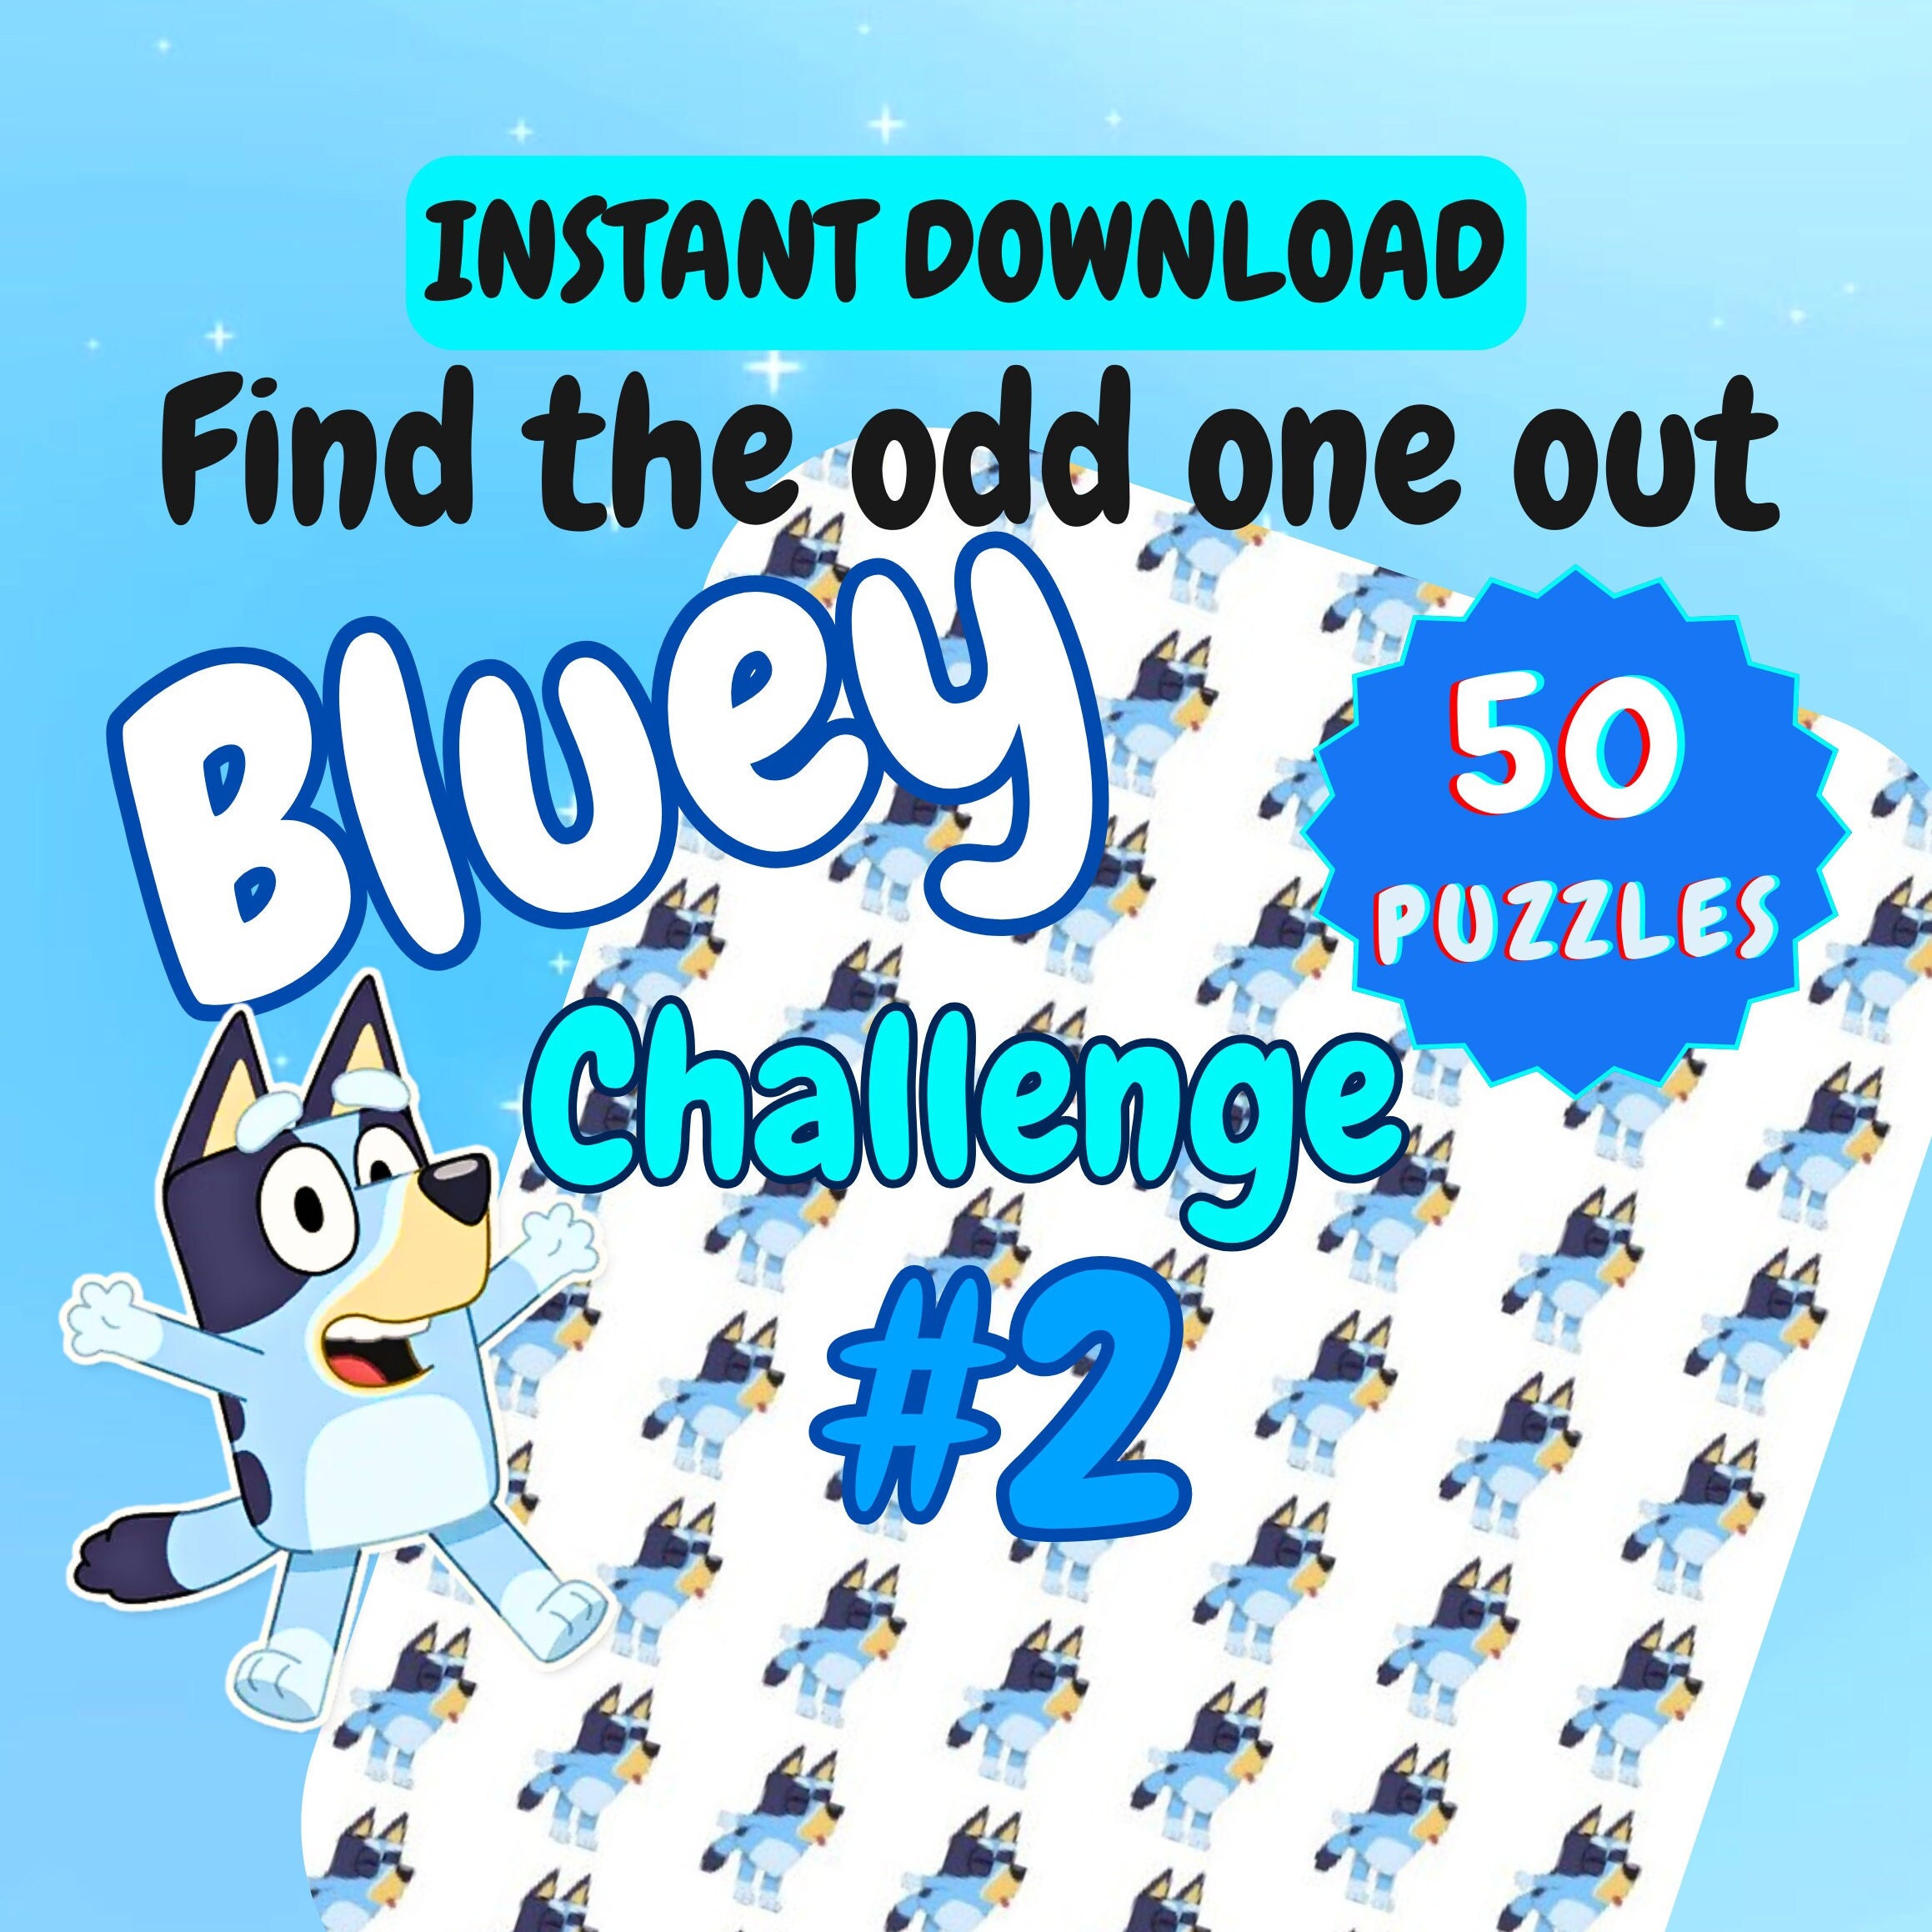 Puzzle 2 Bluey